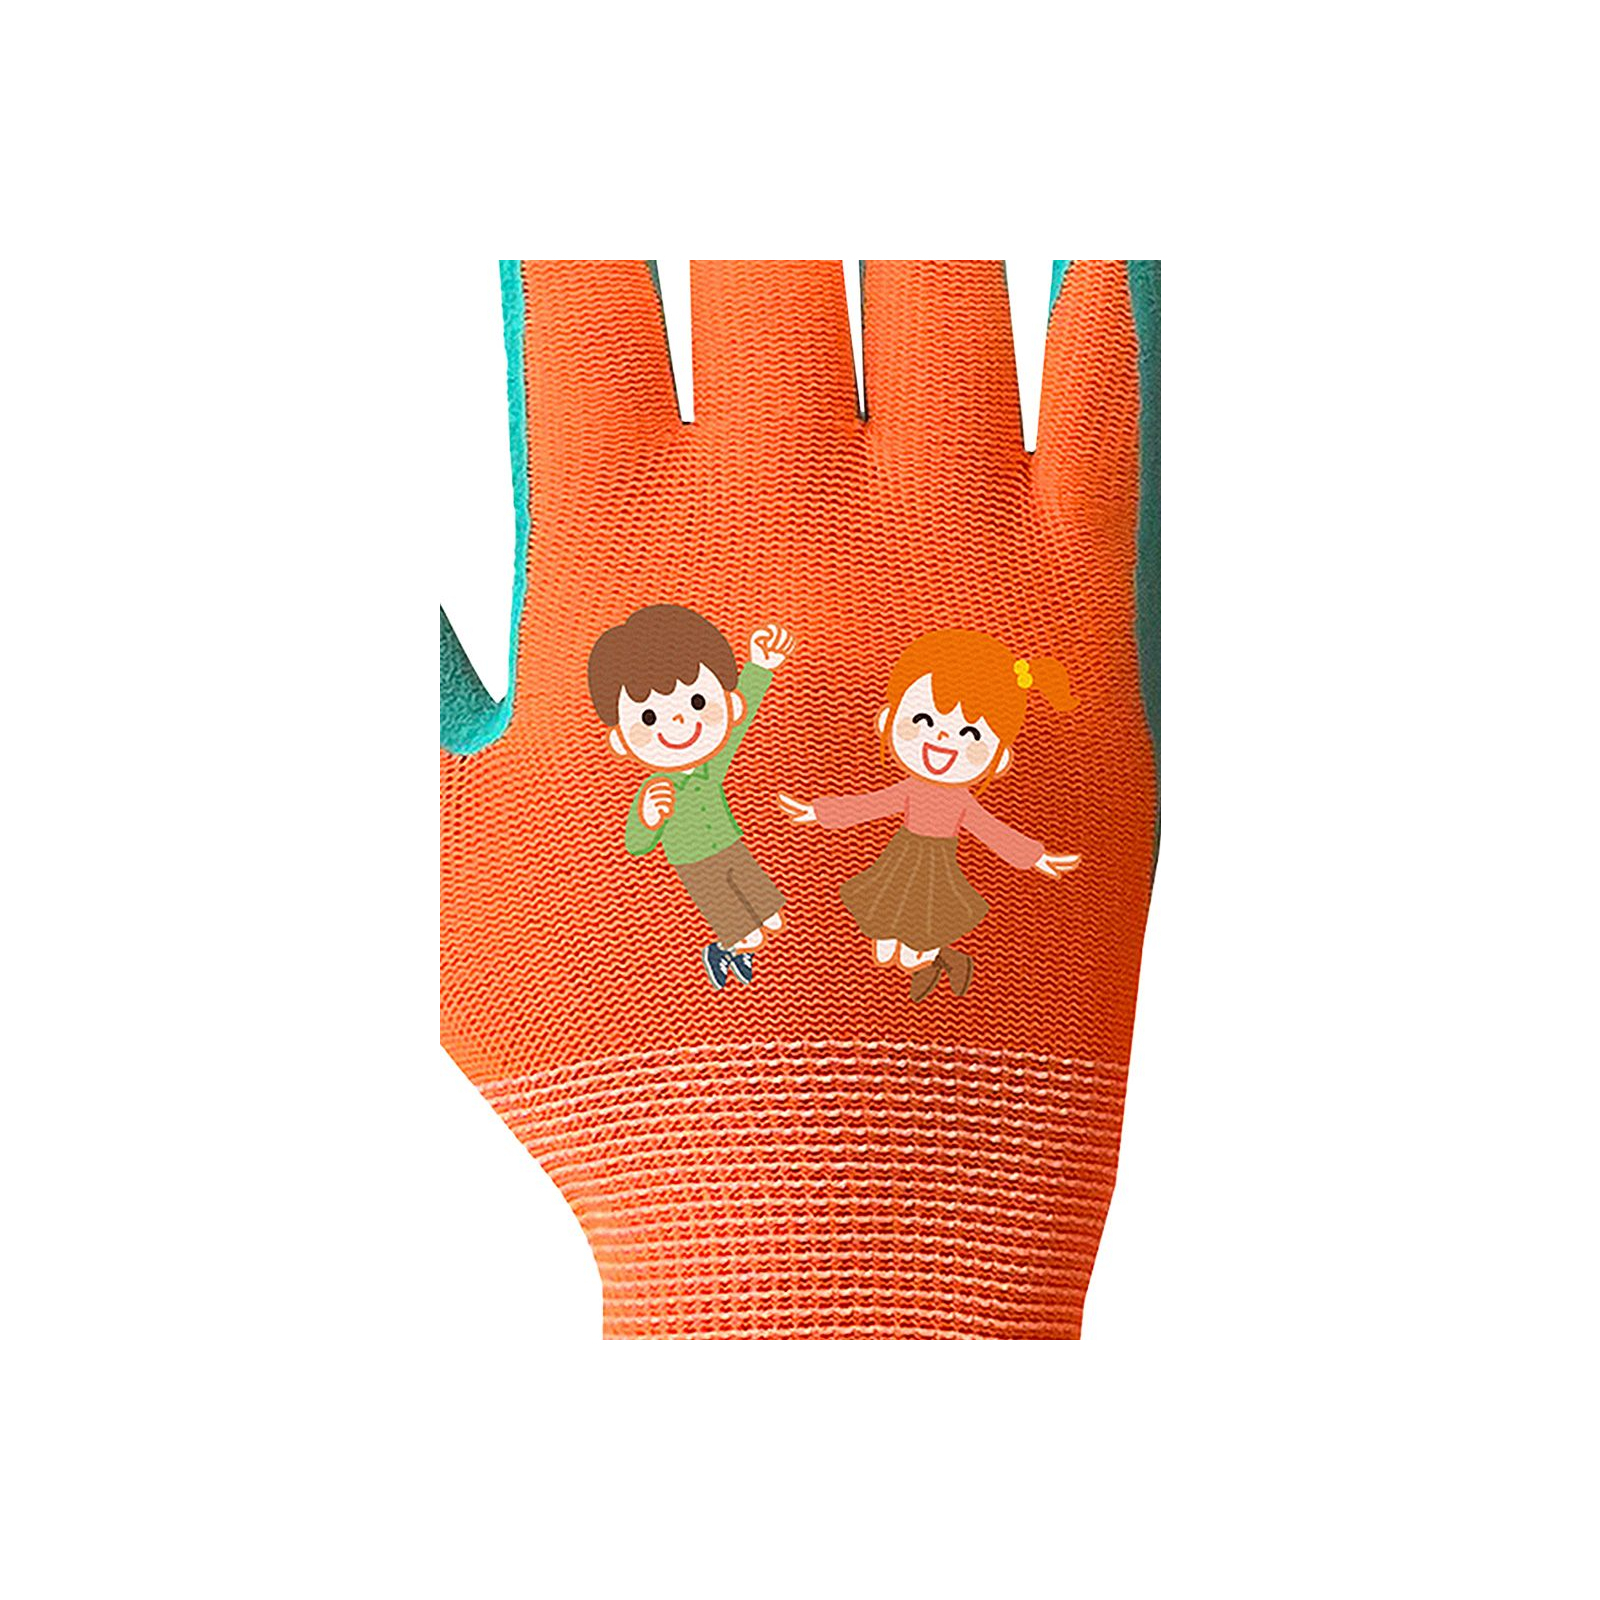 Защитные перчатки Neo Tools детские латекс, полиэстер, дышащая верхняя часть, р.5, оранжевый (97-644-5) изображение 10